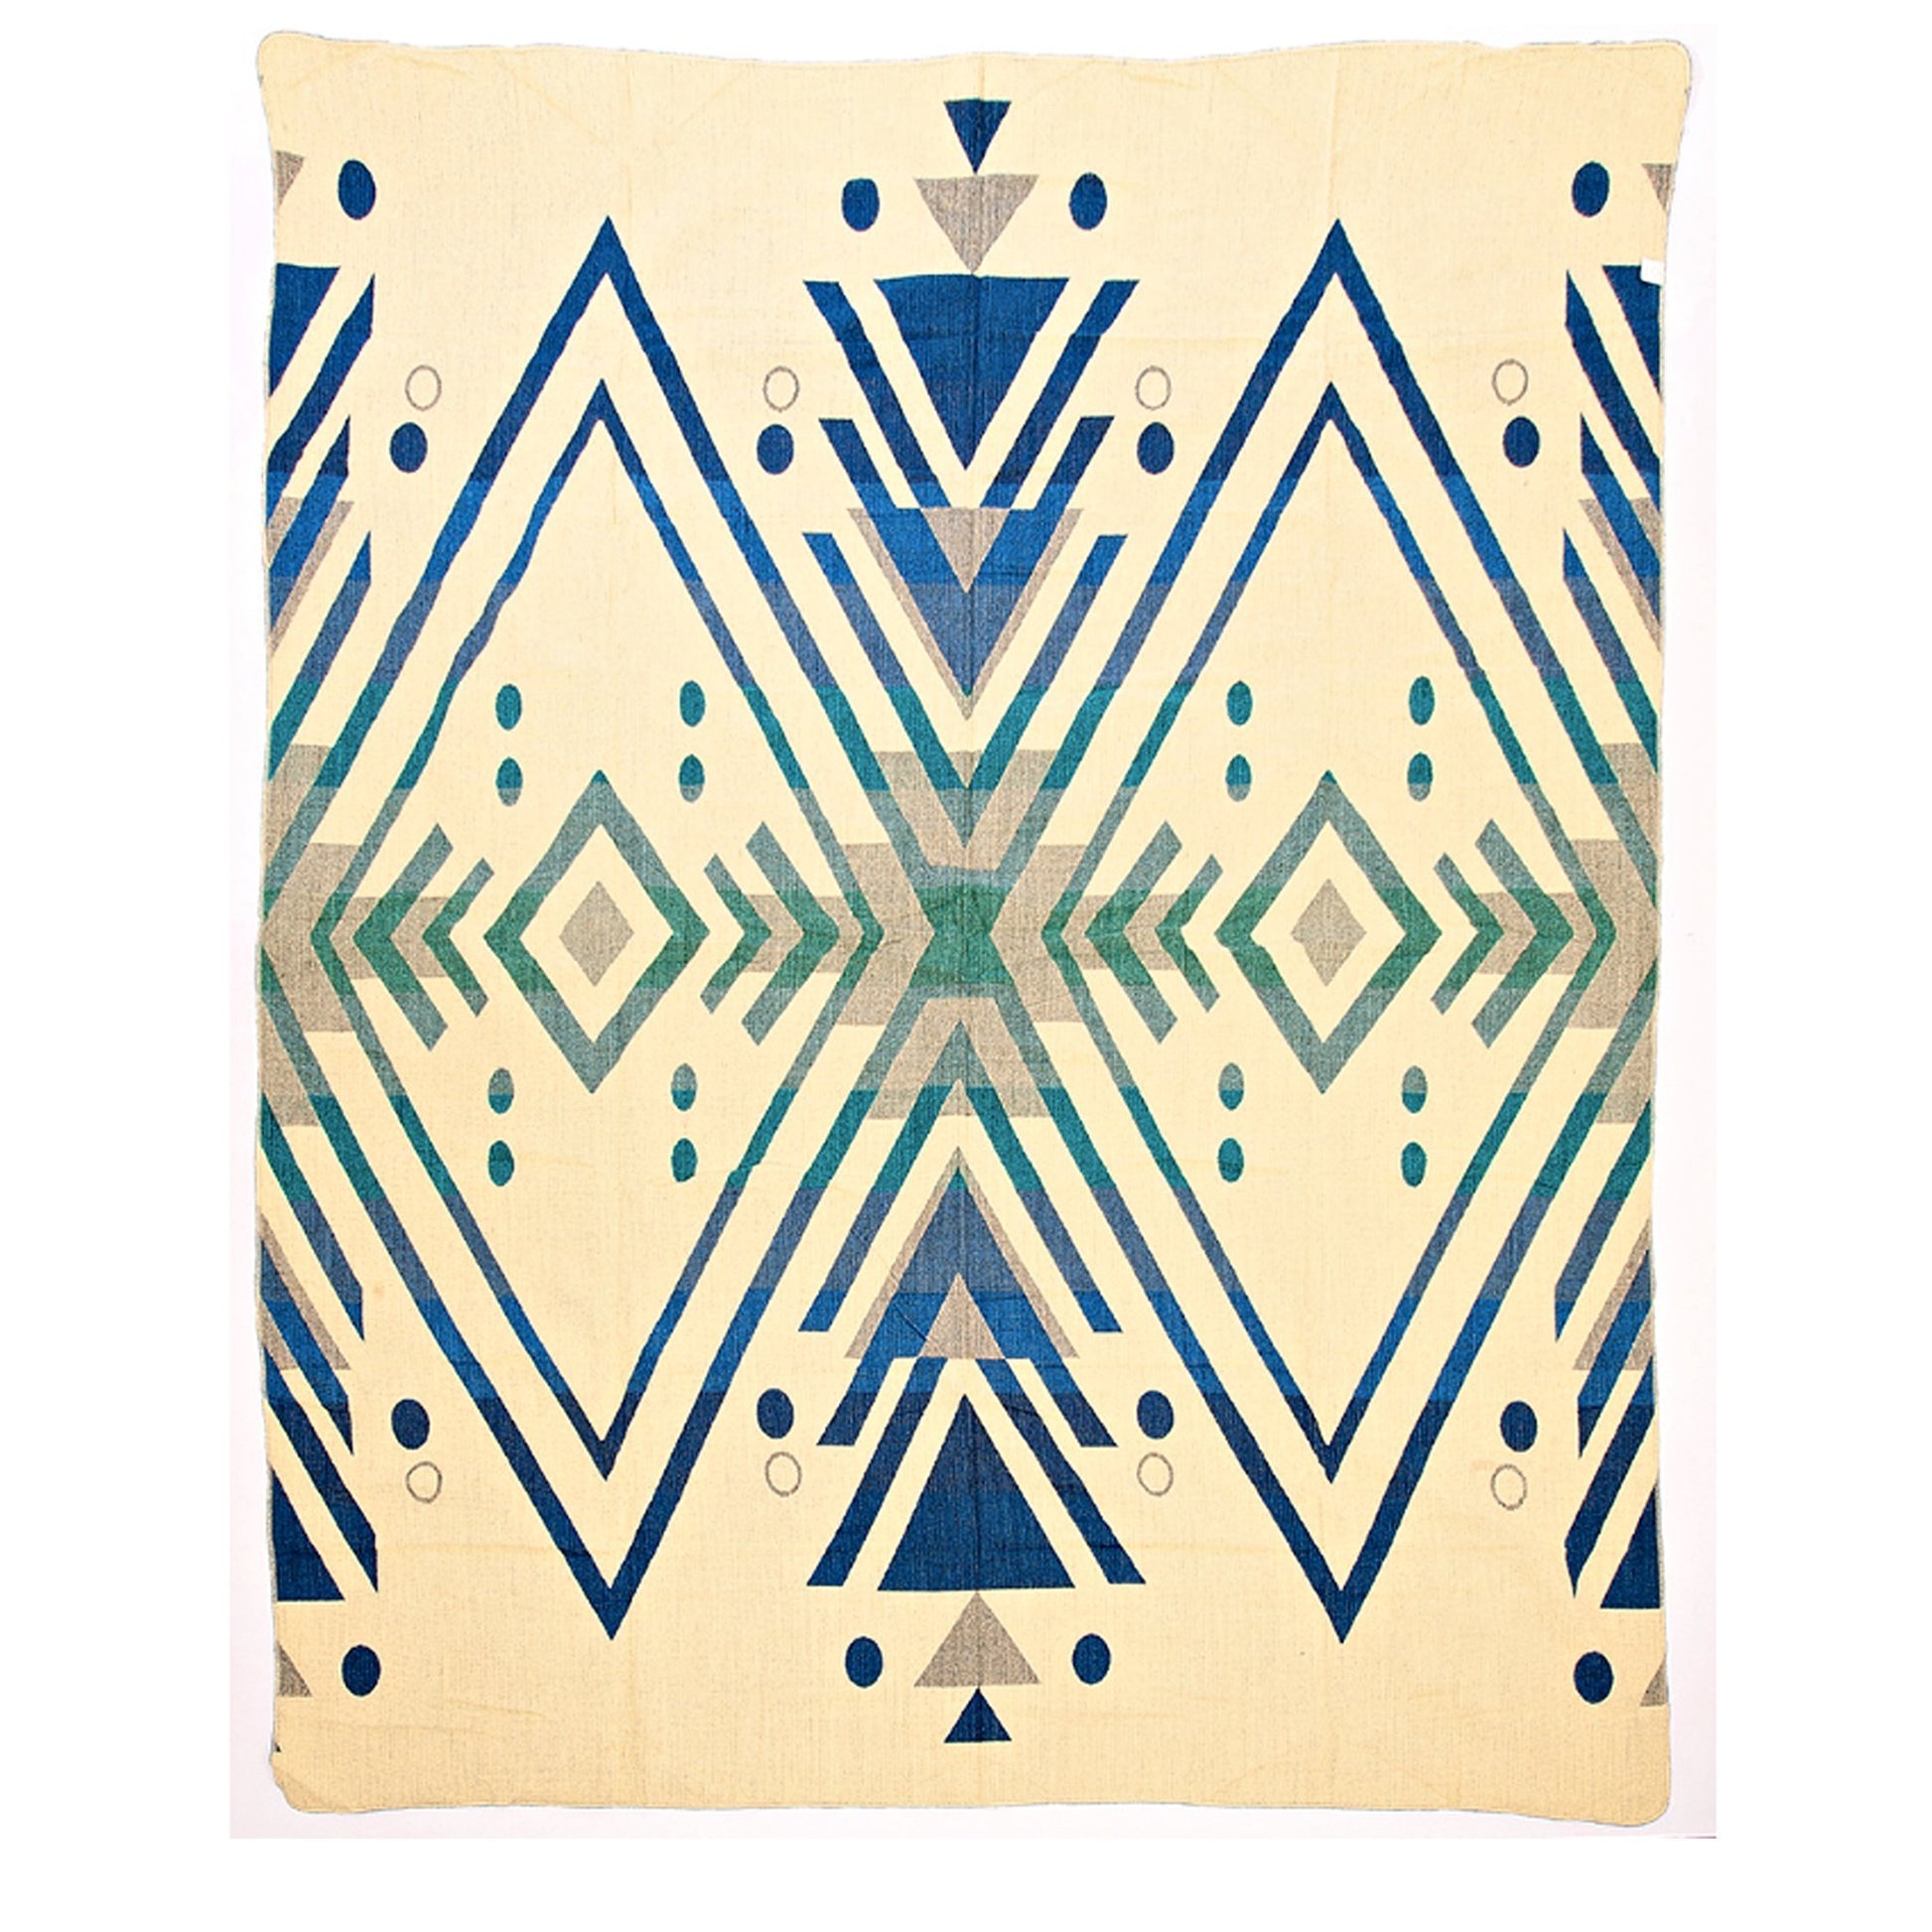 Authentische Imbabura Decke aus Alpaka Wolle - 195 x 235 cm - Blau und Weiß - Vandeley